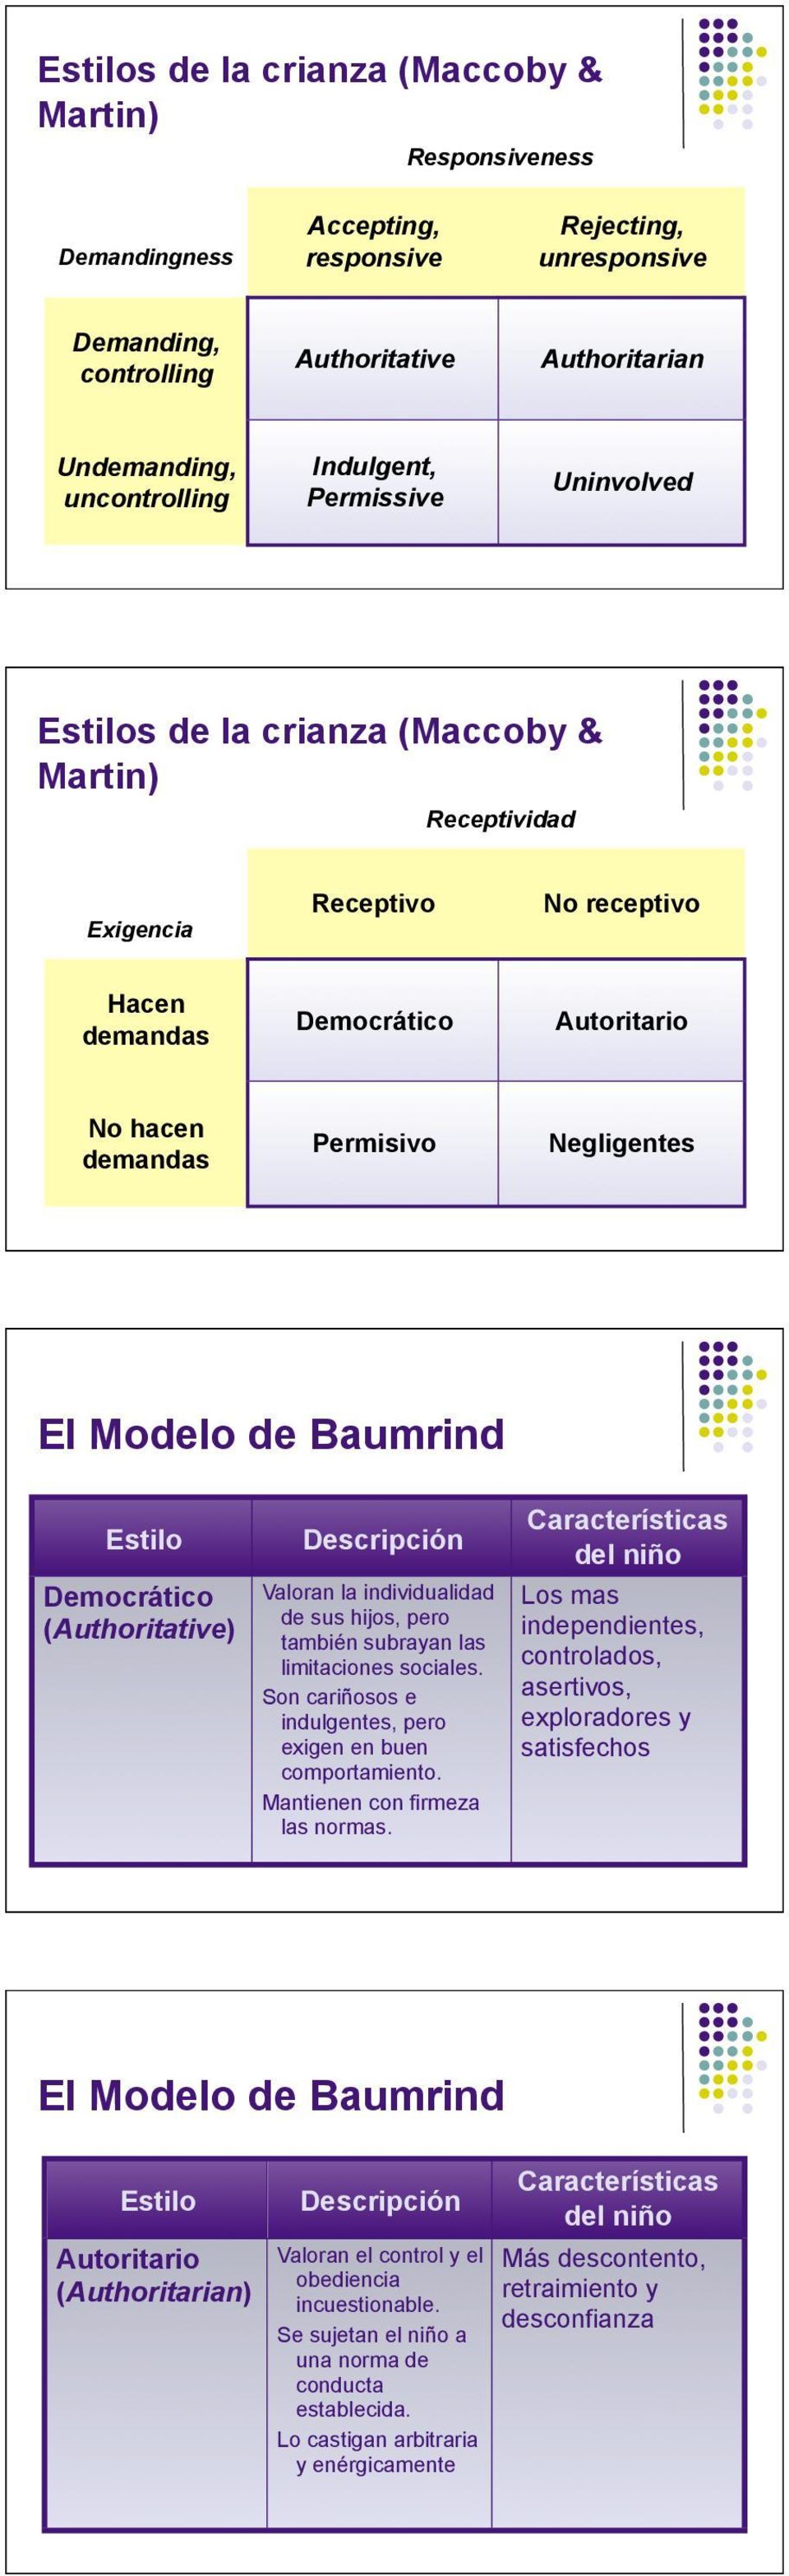 El Modelo de Baumrind Estilo Democrático (Authoritative) Descripción Valoran la individualidad de sus hijos, pero también subrayan las limitaciones sociales.